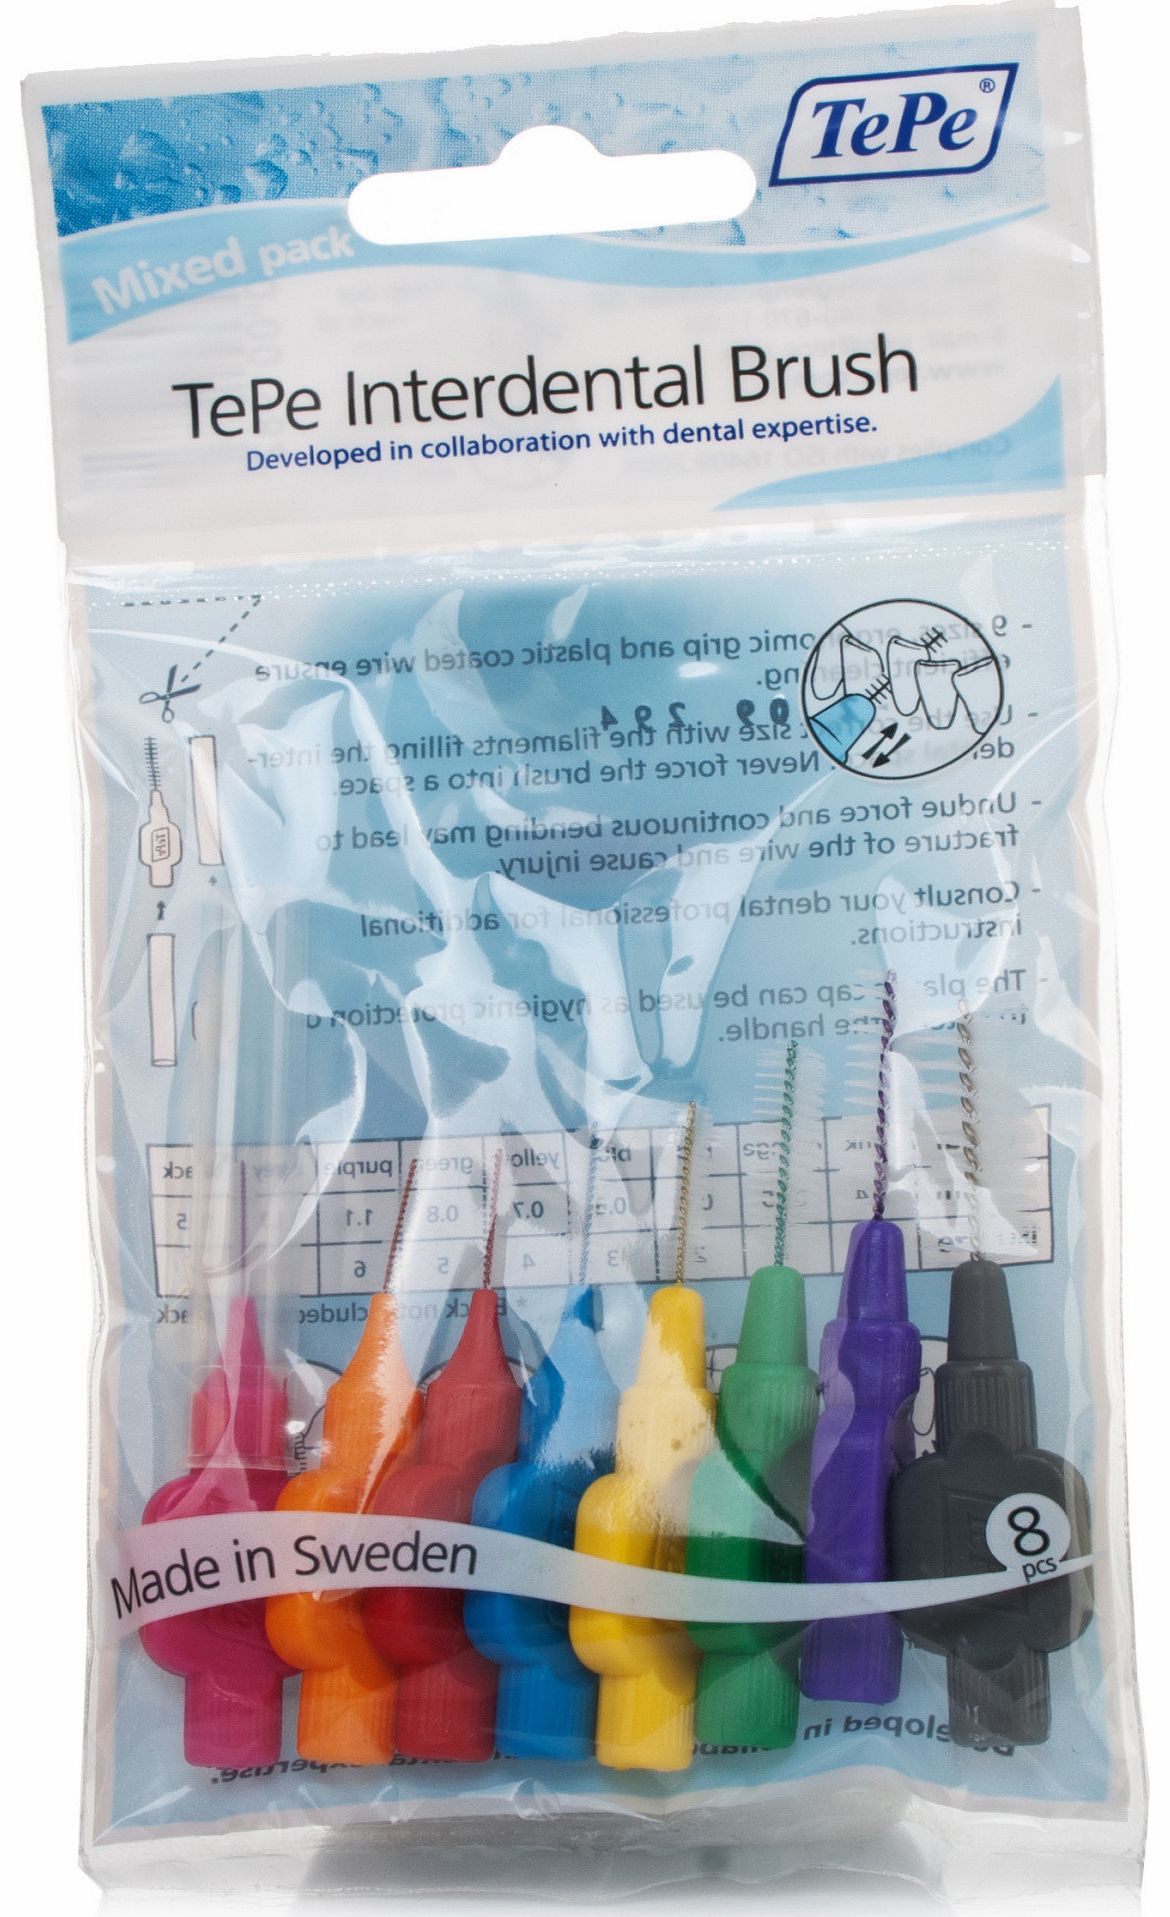 Interdental Brush Kit